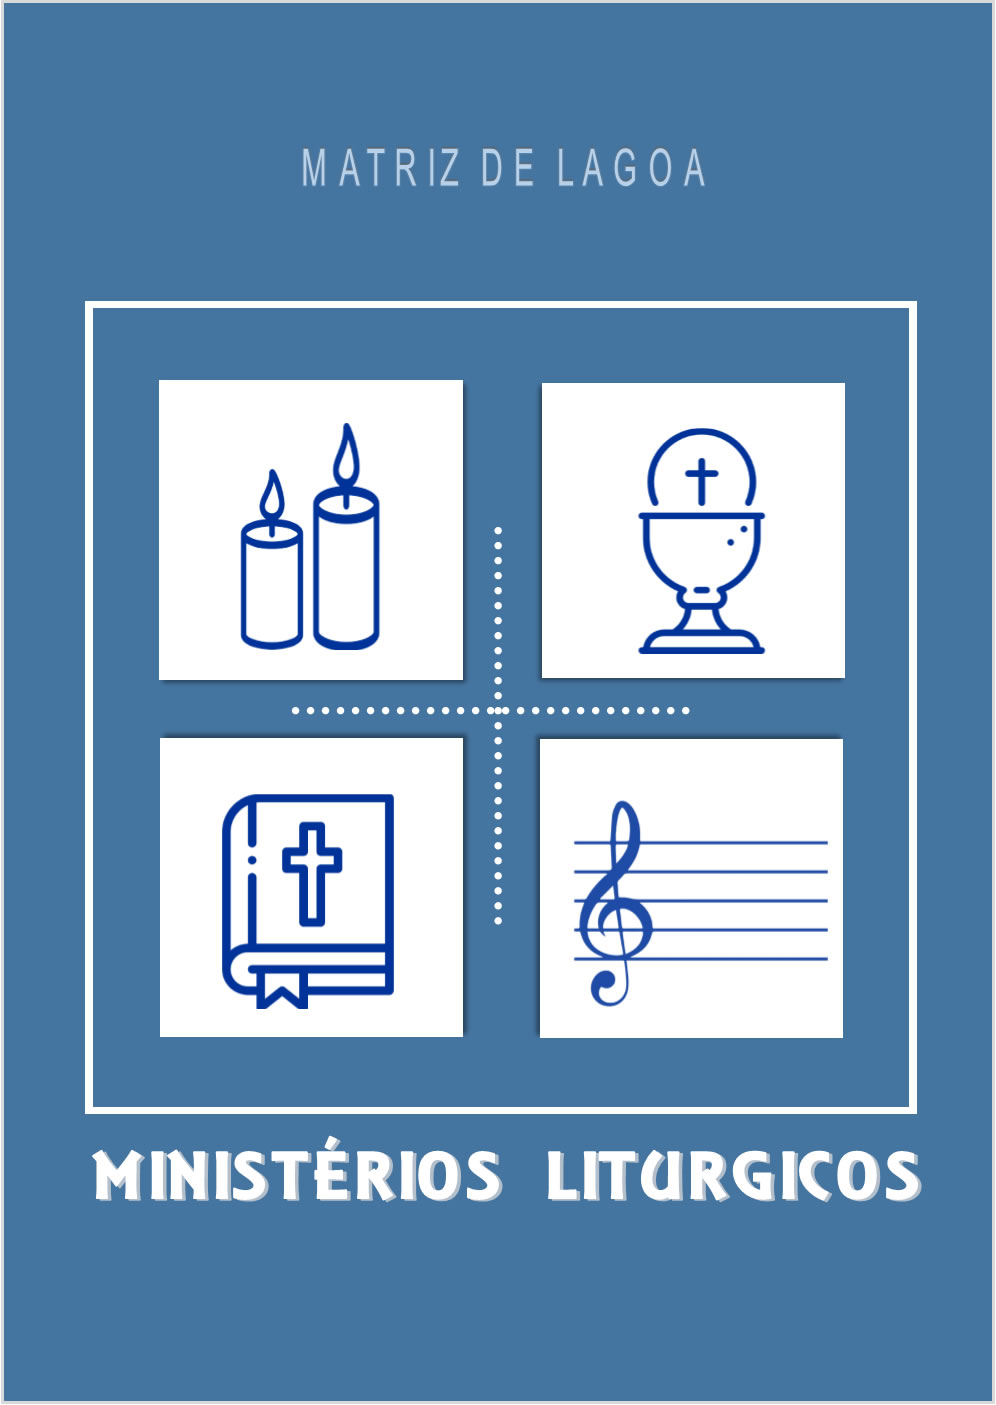 Ministérios Litúrgicos Janeiro